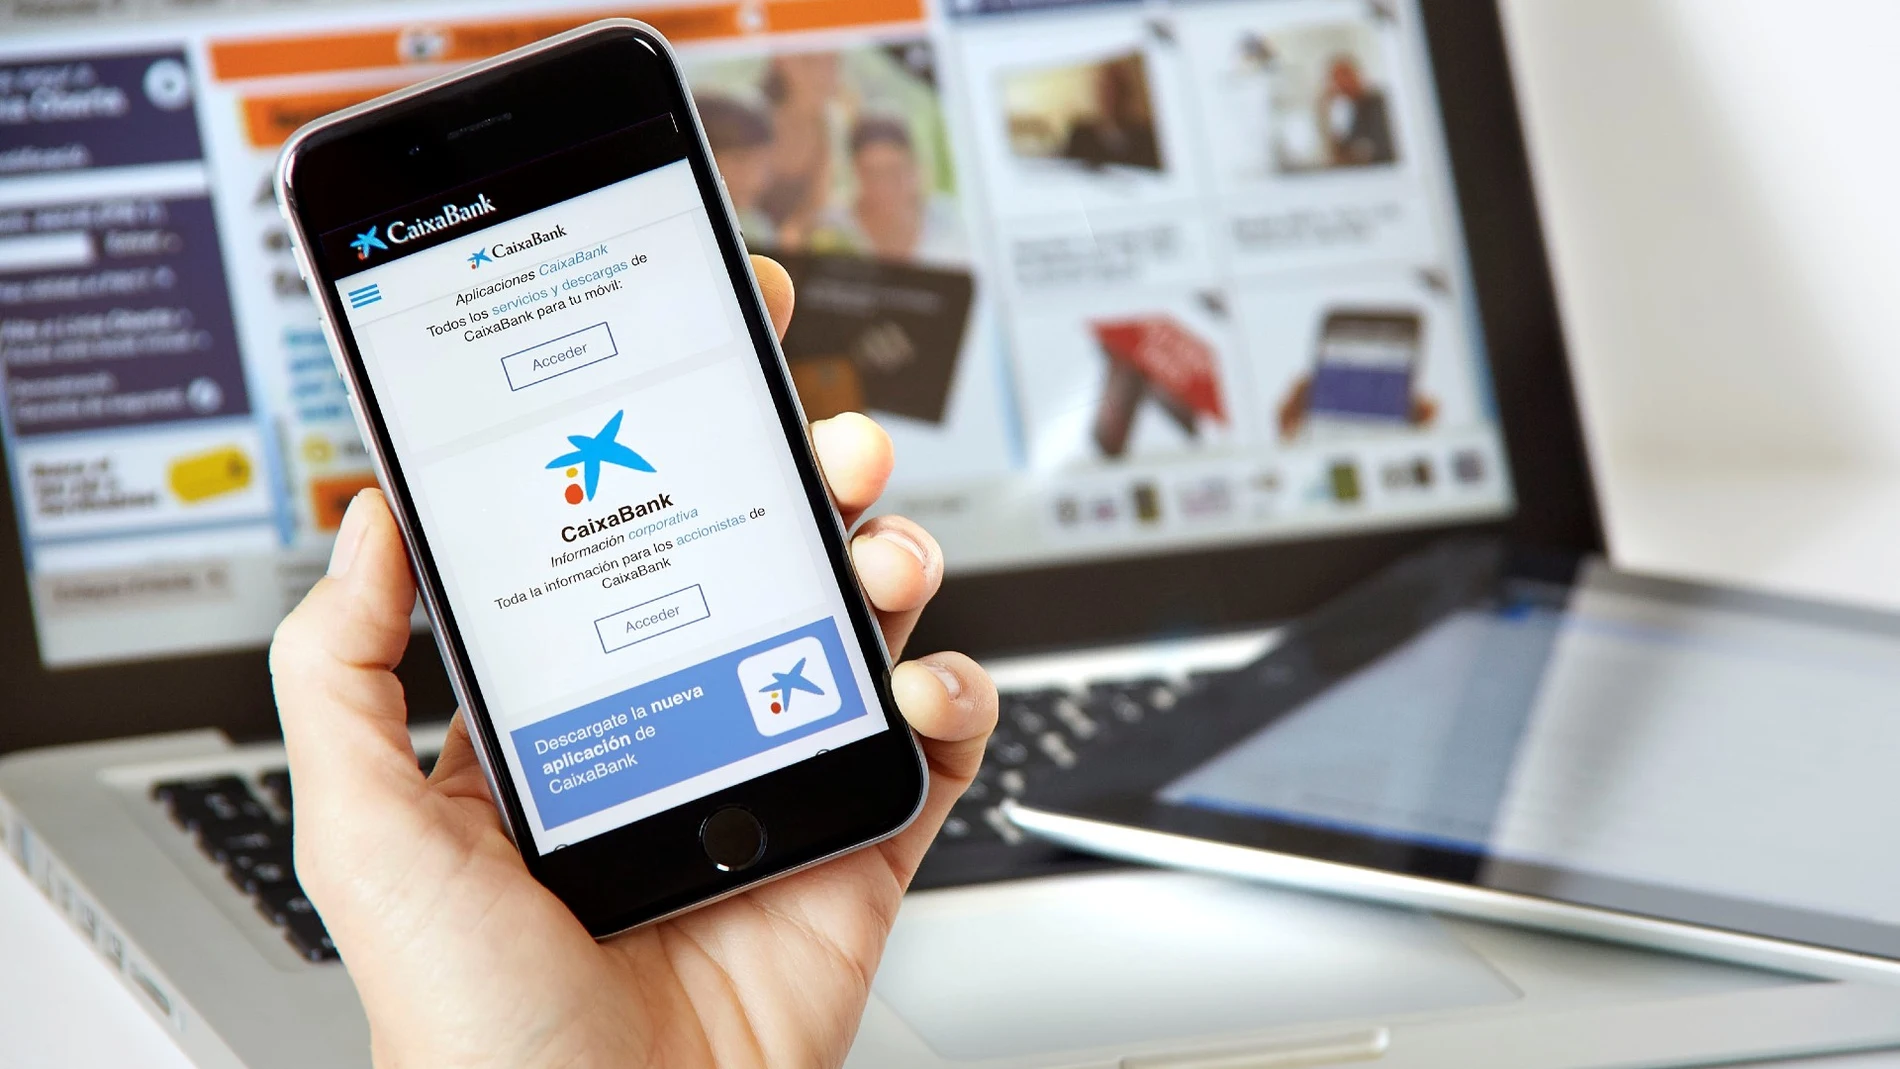 CaixaBank tiene la "app" financiera con mayor porcentaje de usuarios entre las monitorizadas en el estudio.